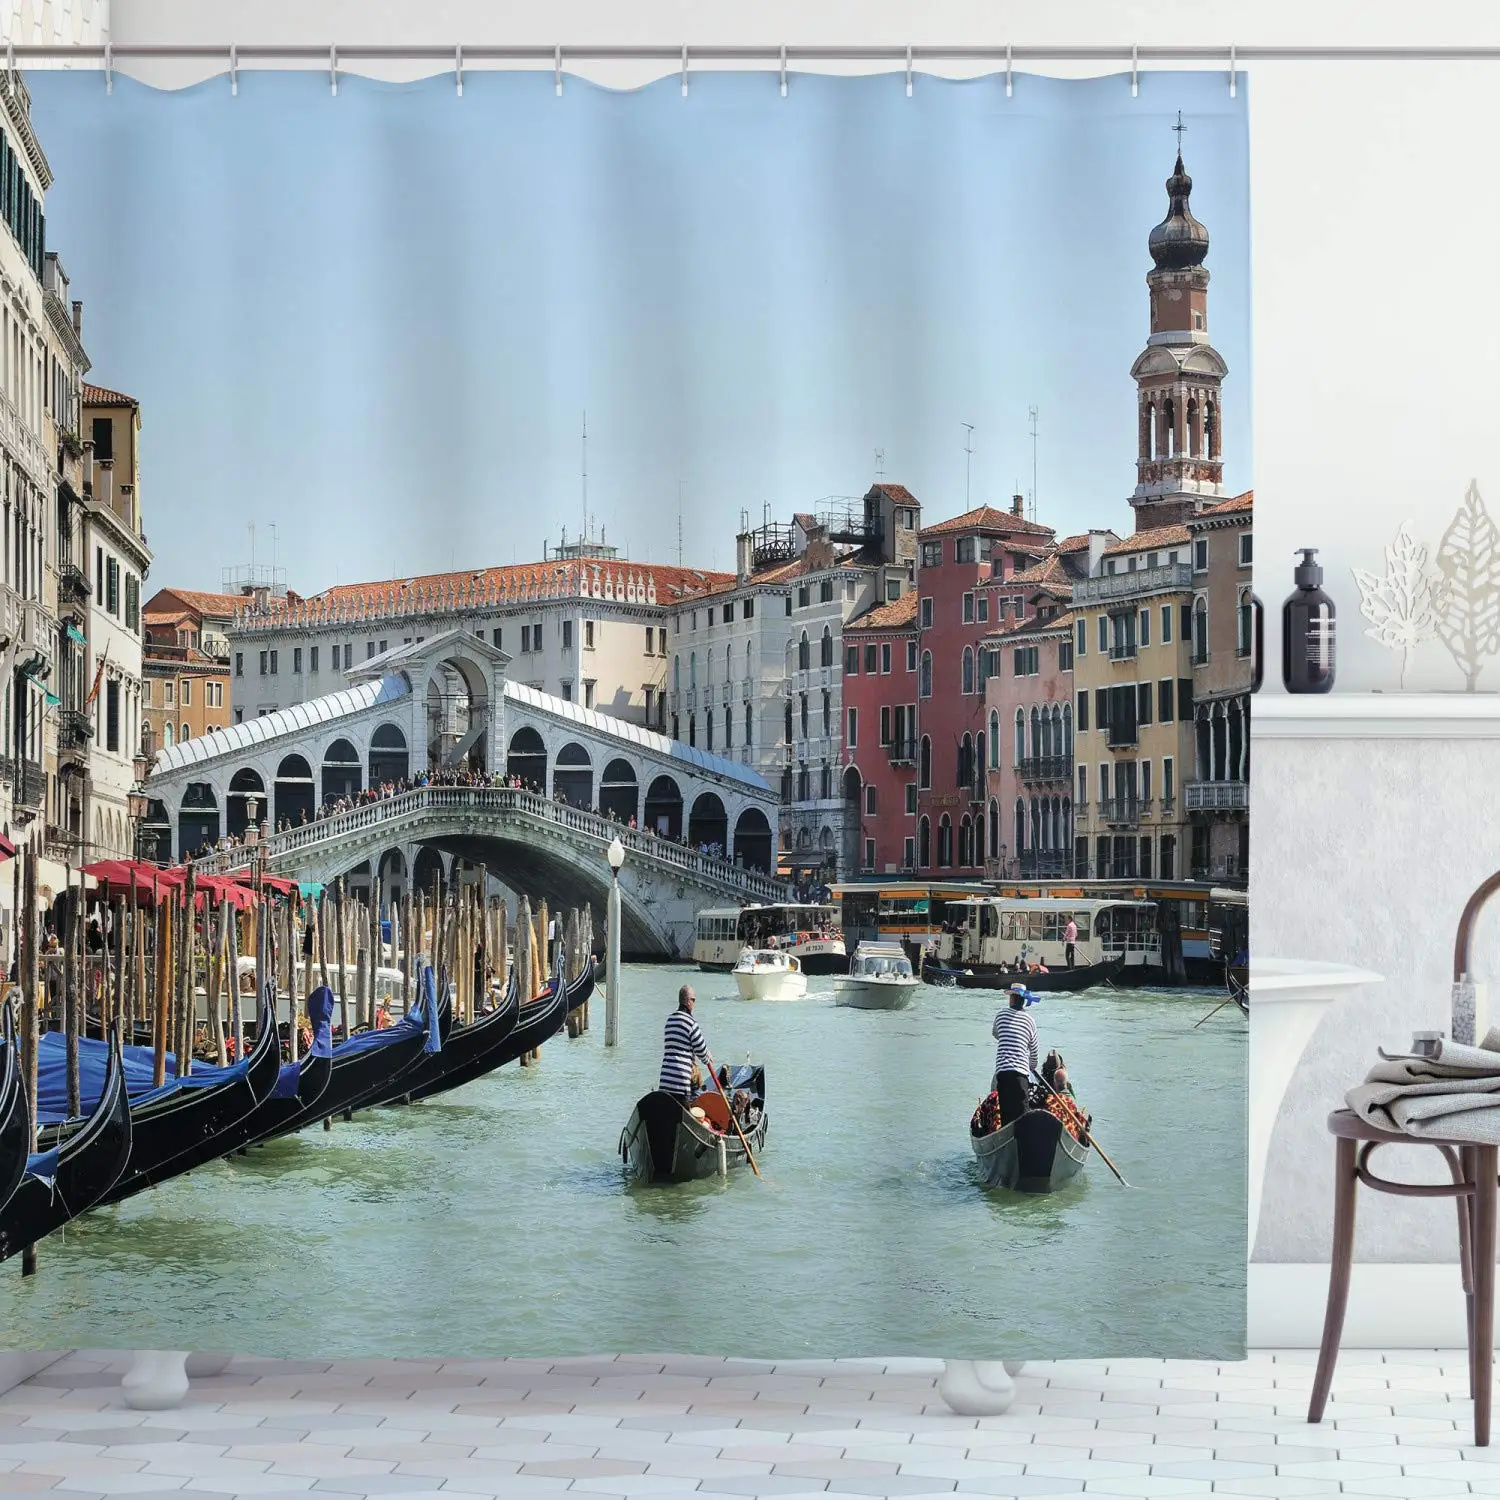 

Европейская душевая занавеска, большой канал в Венеции, Horizon, европейский город, международное наследие, городской стиль, набор для ванной комнаты, домашний декор